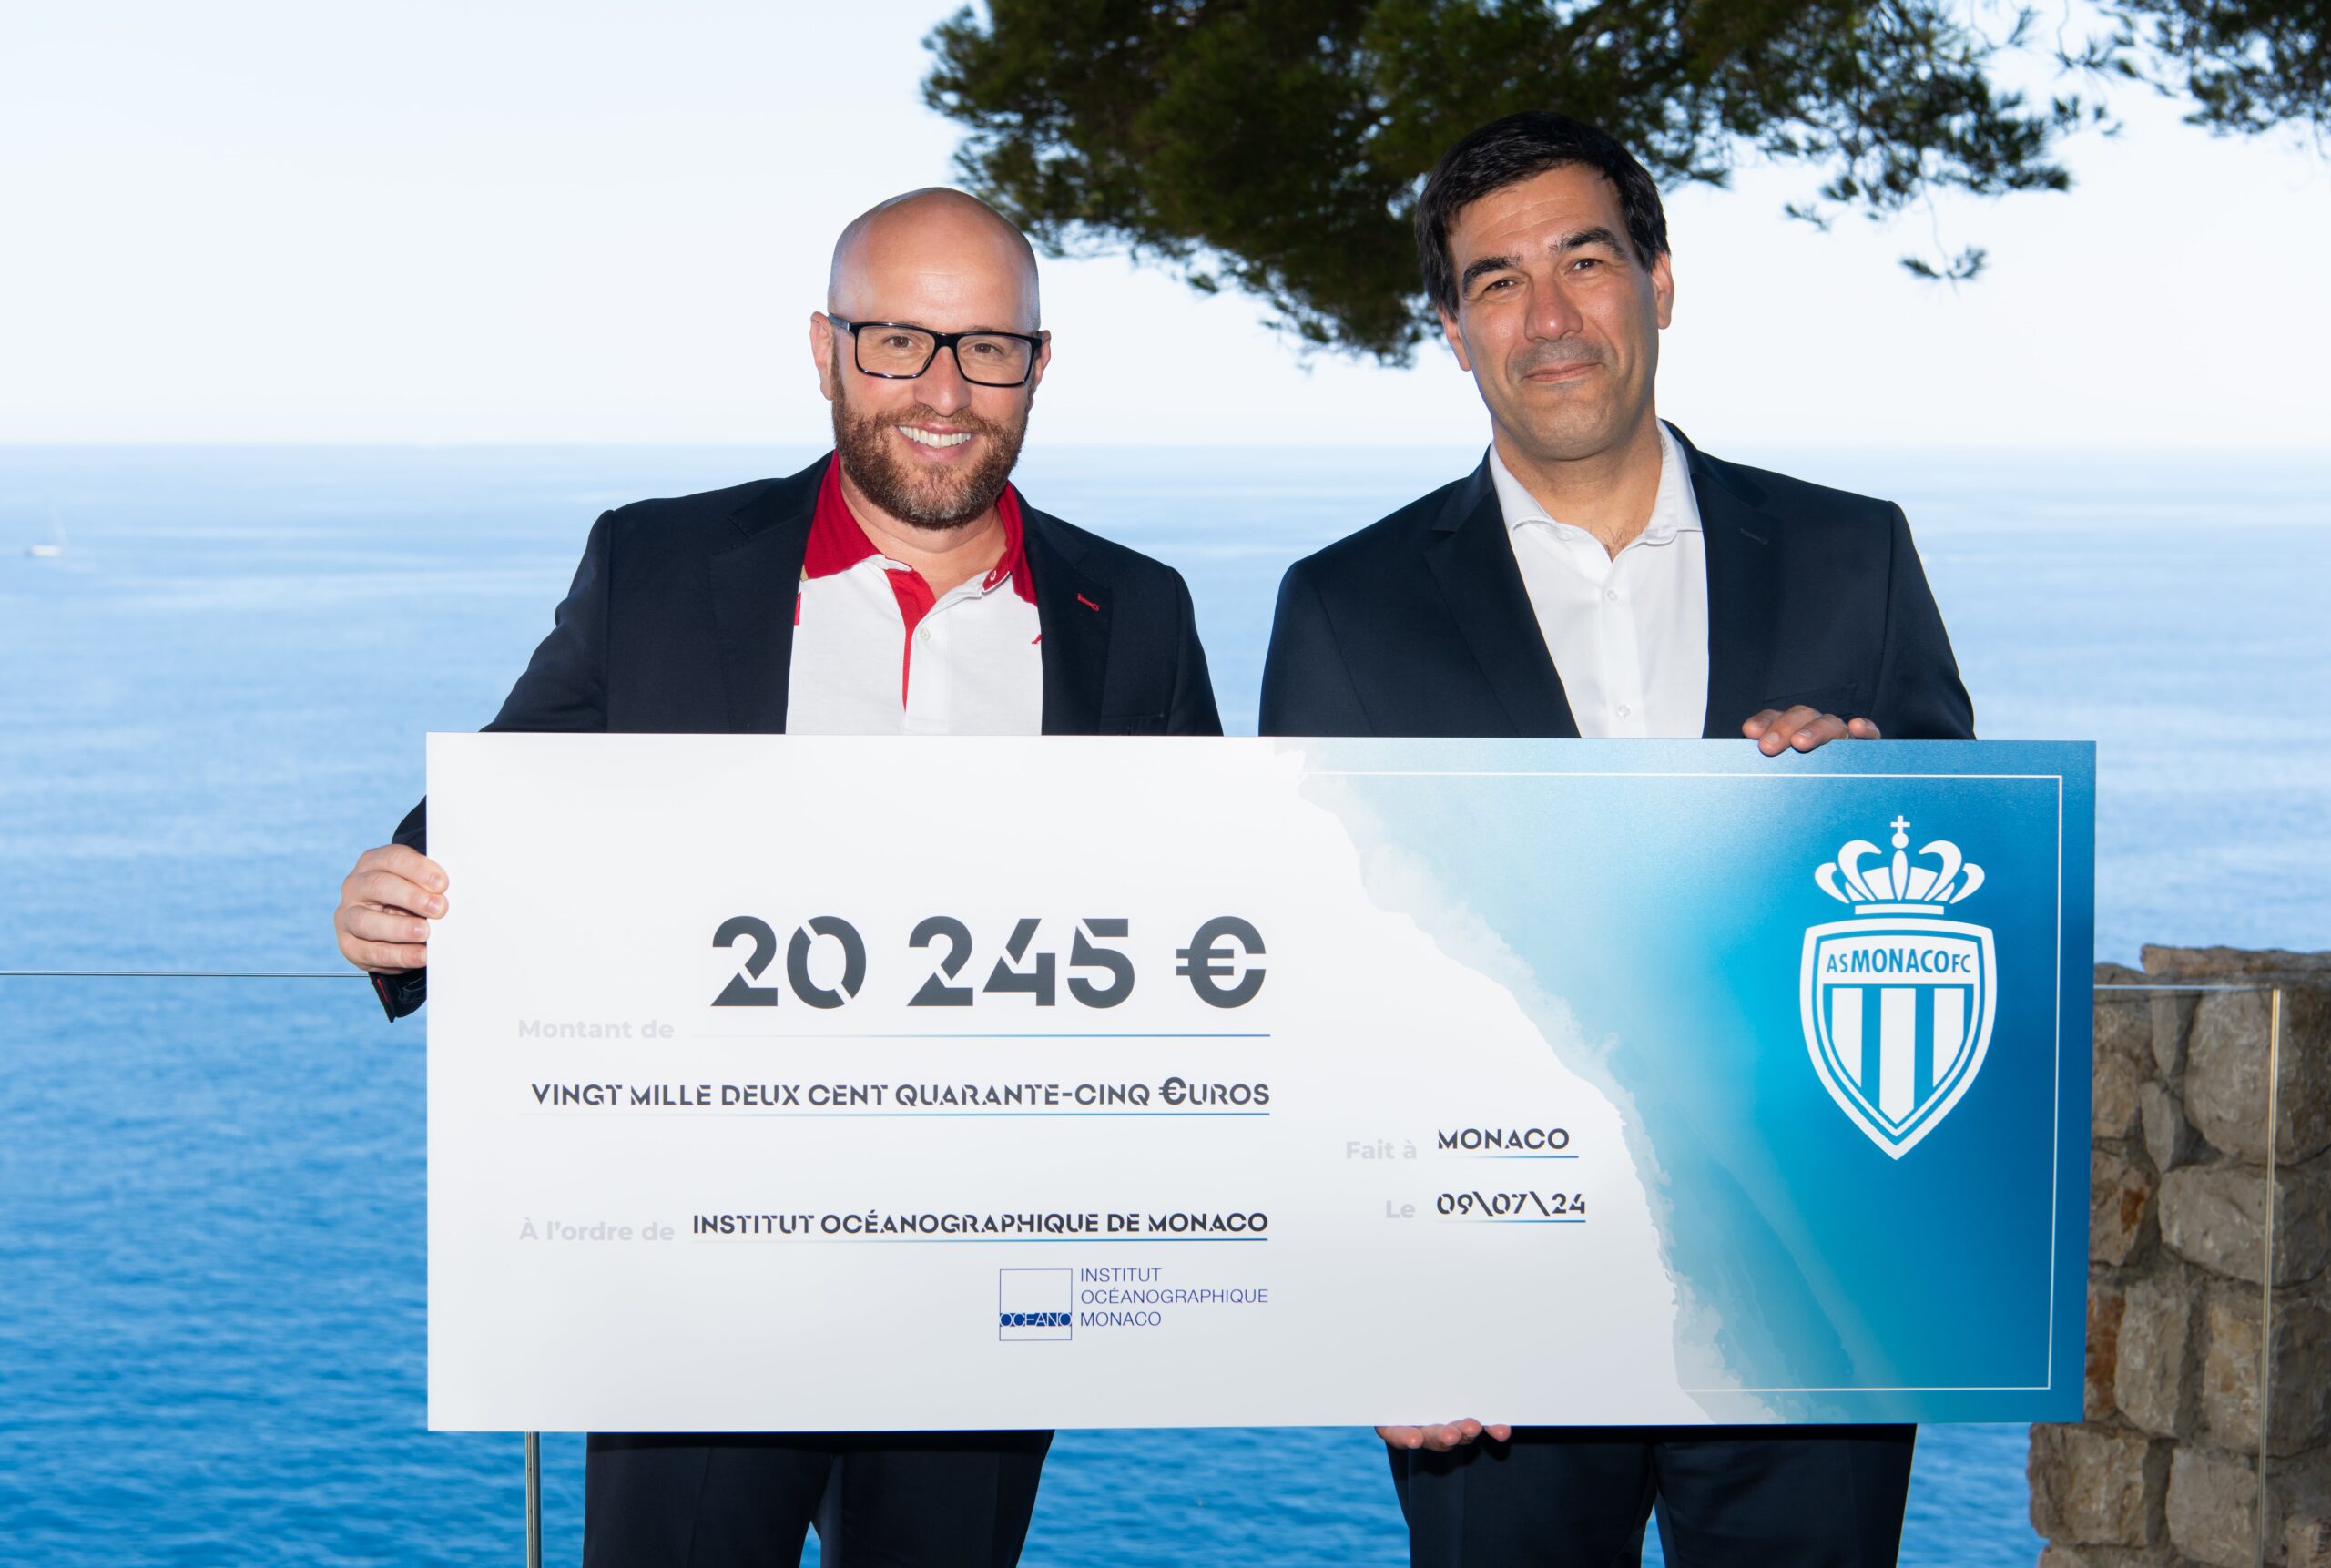 L'AS Monaco Remet un Chèque de 20 245 Euros à l'Institut Océanographique